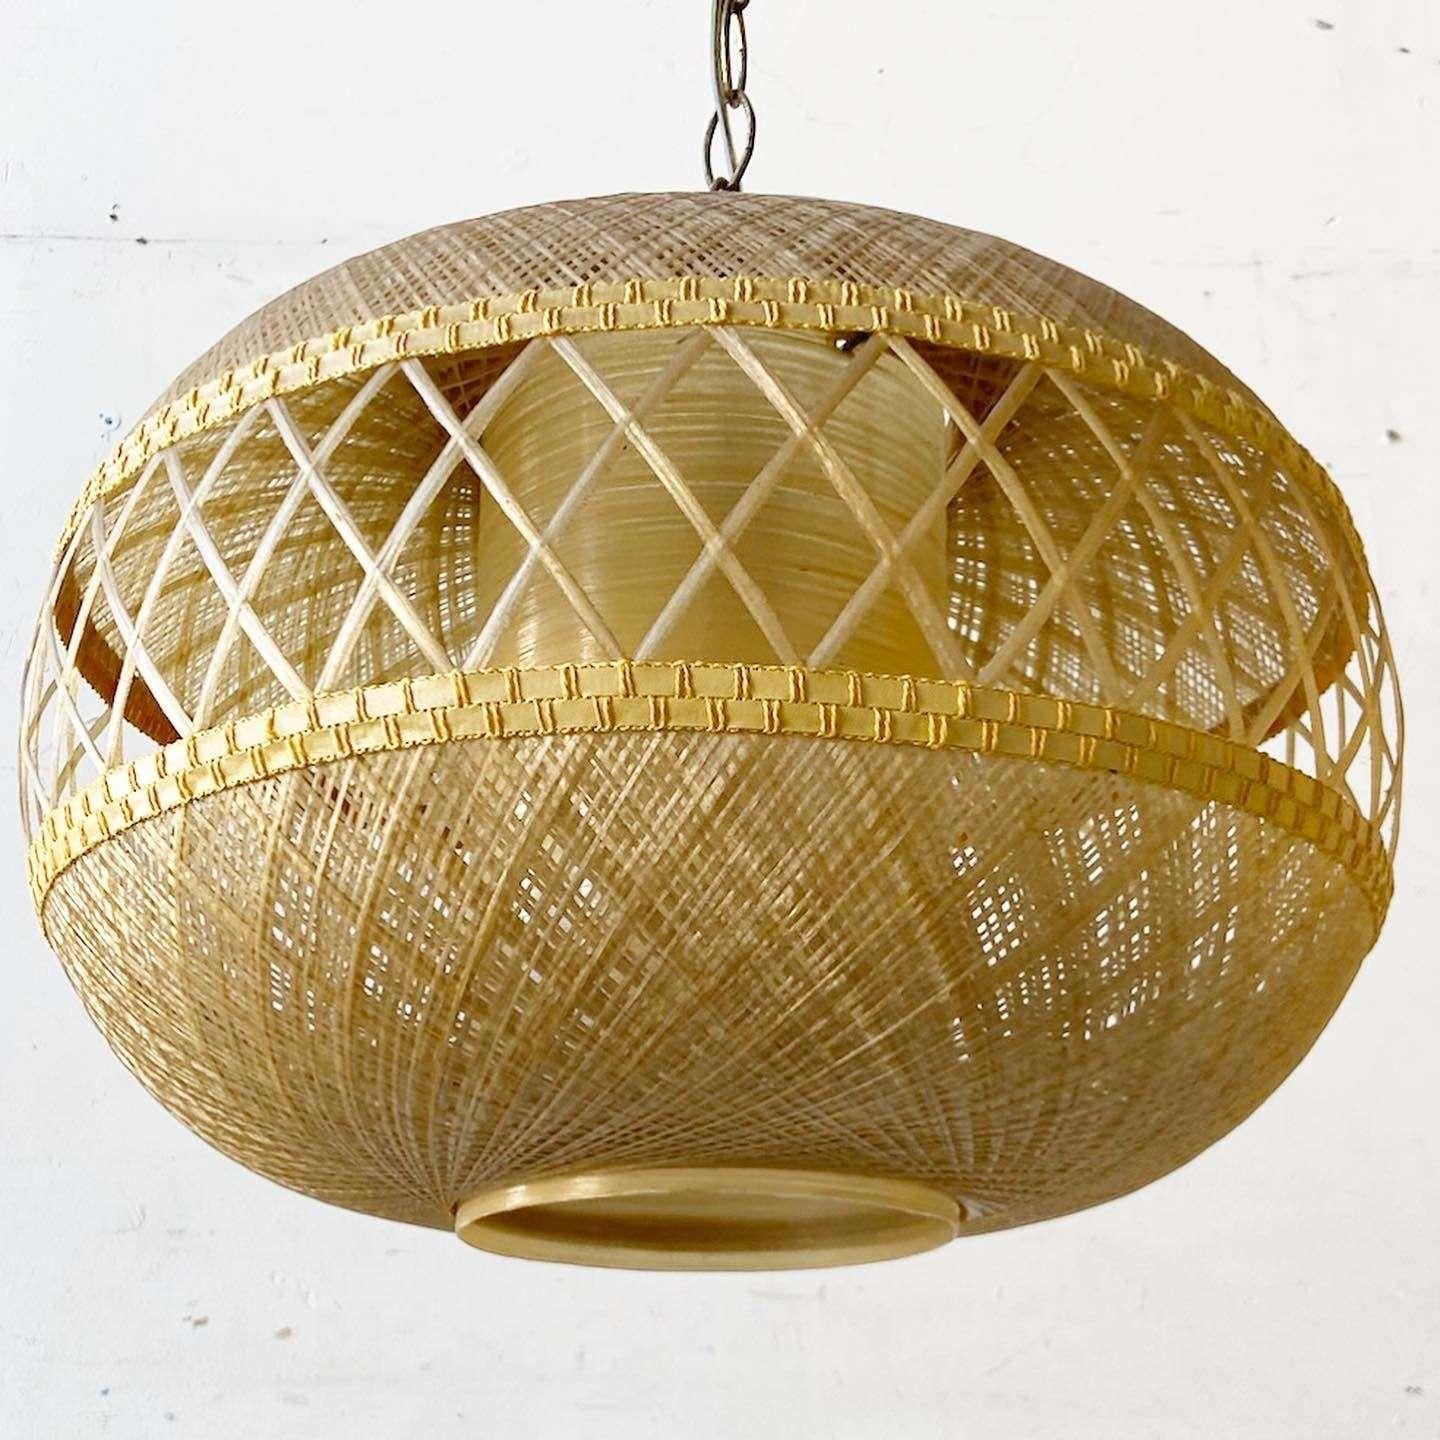 Exceptional vintage boho chic spun fiberglass pendant lamp. Features a fantastic woven design.
